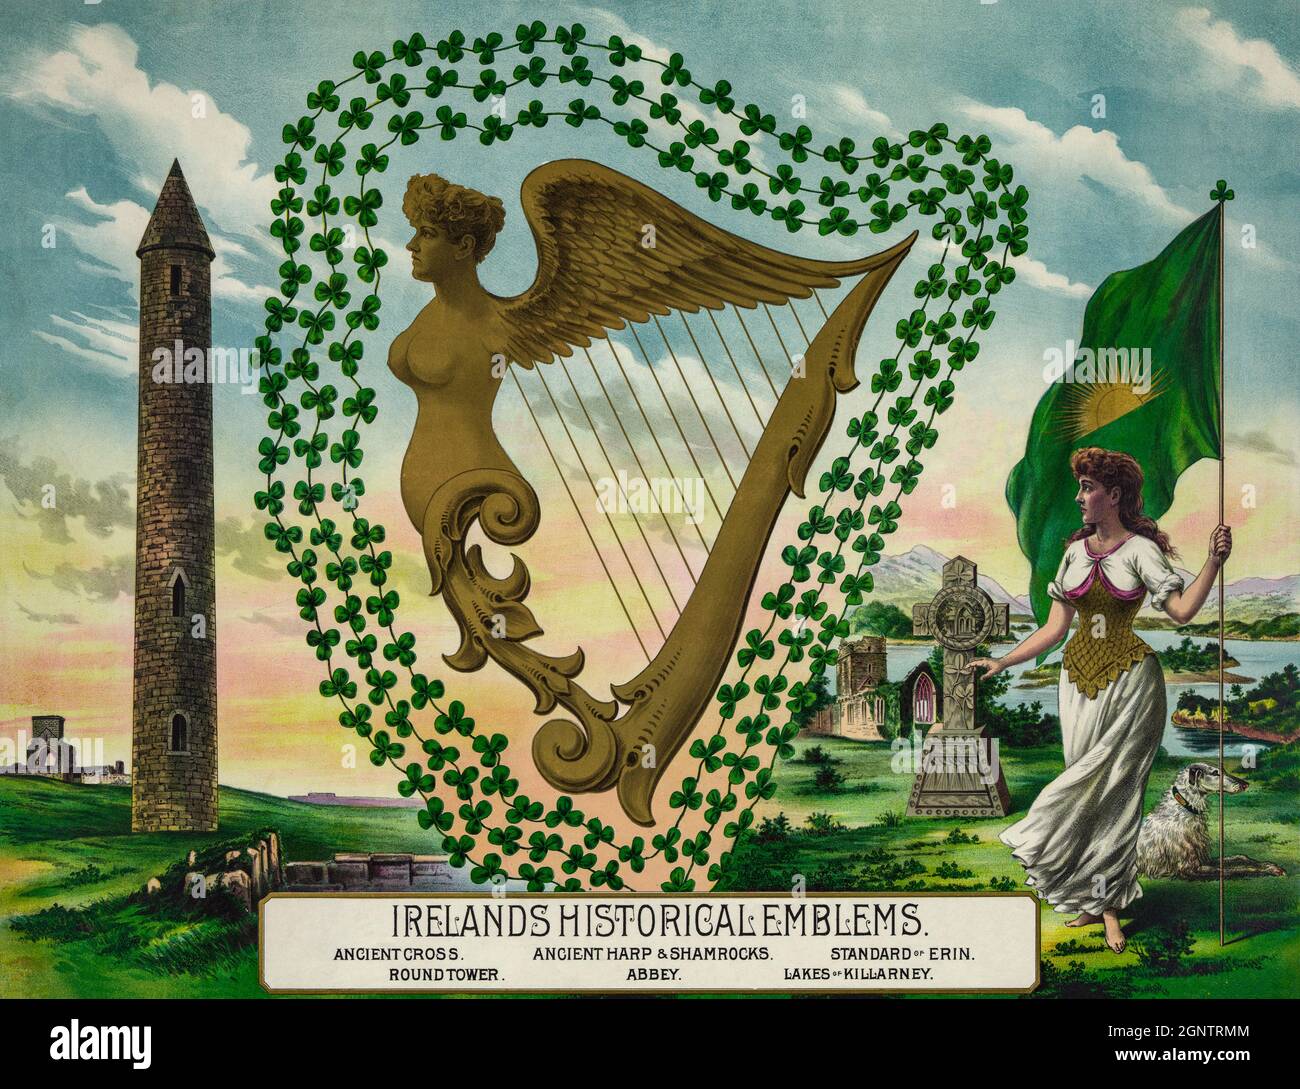 A 19th century illustration of iconic, historical Irish emblems, or symbols with an Irish harp, surrounded by shamrocks. Stock Photo